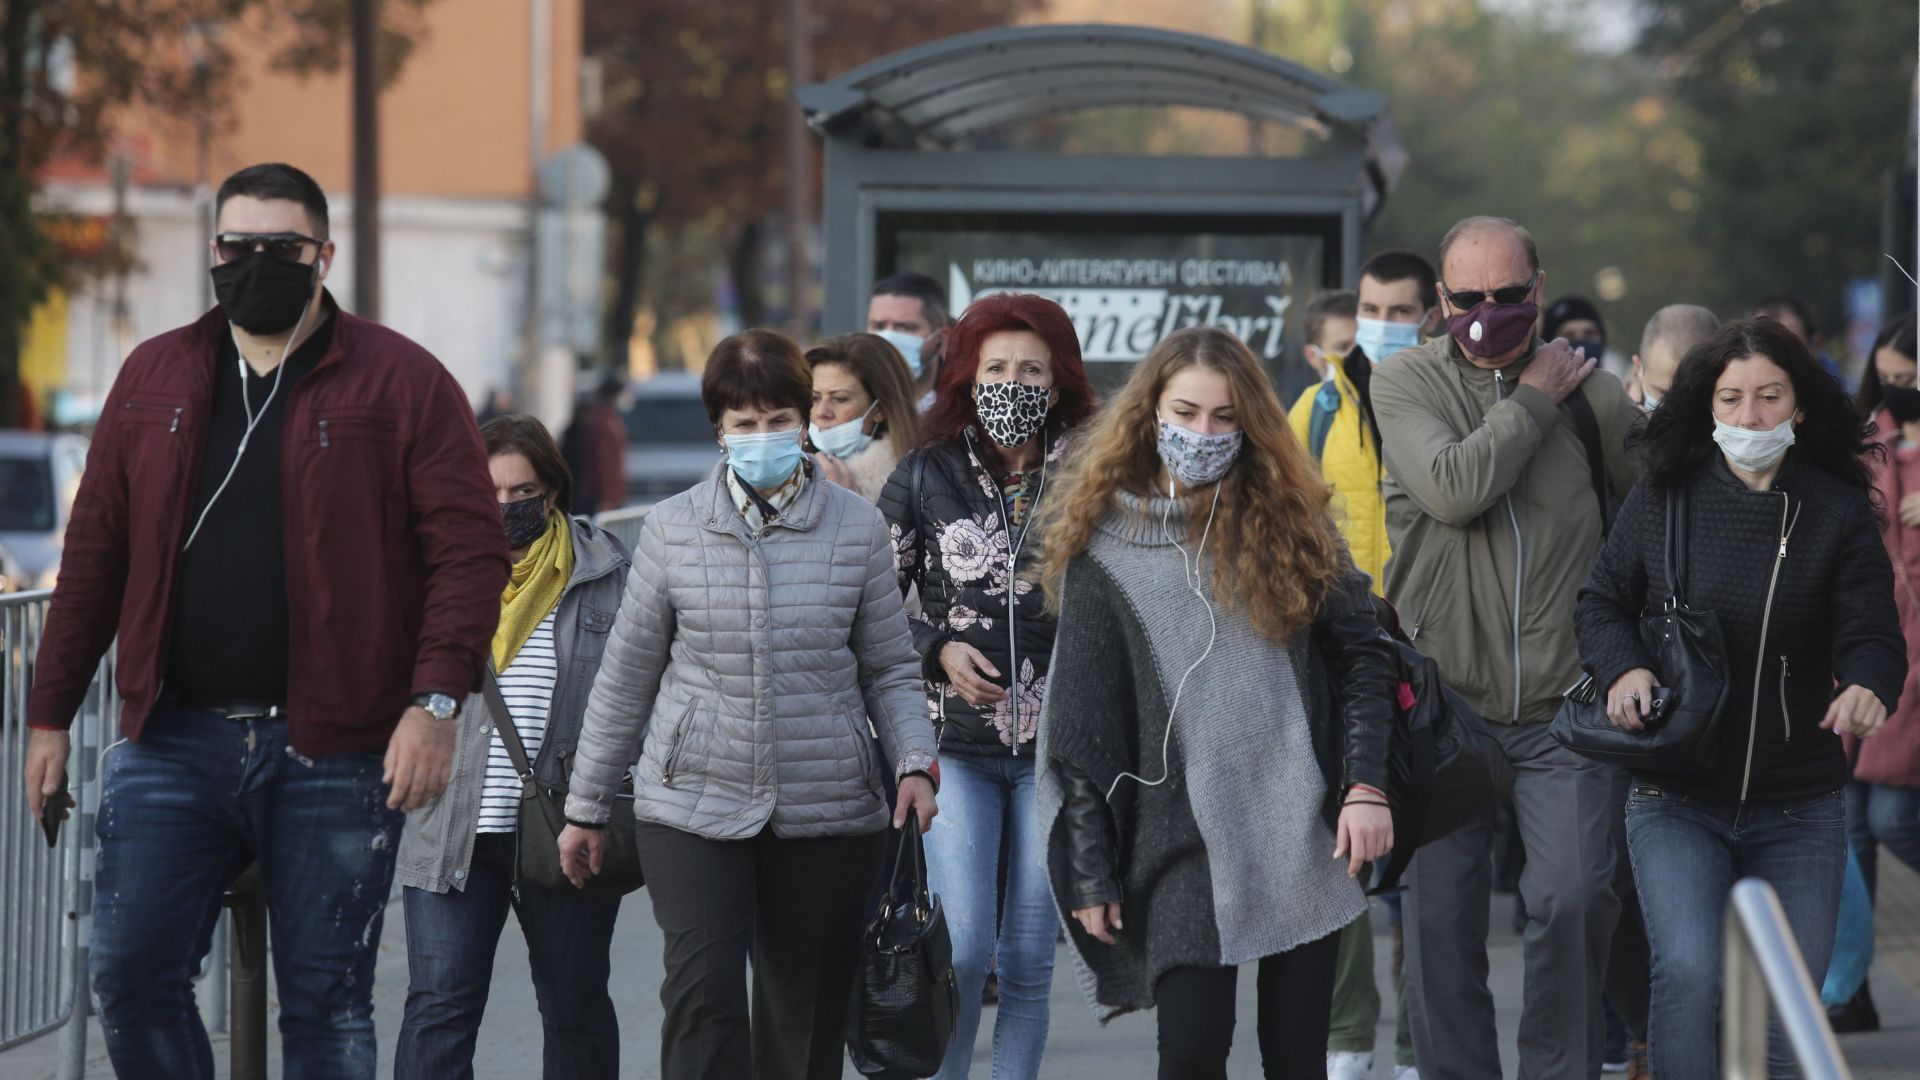 "Галъп": Българите по-скоро одобряват и свикват със строгите мерки срещу коронавируса